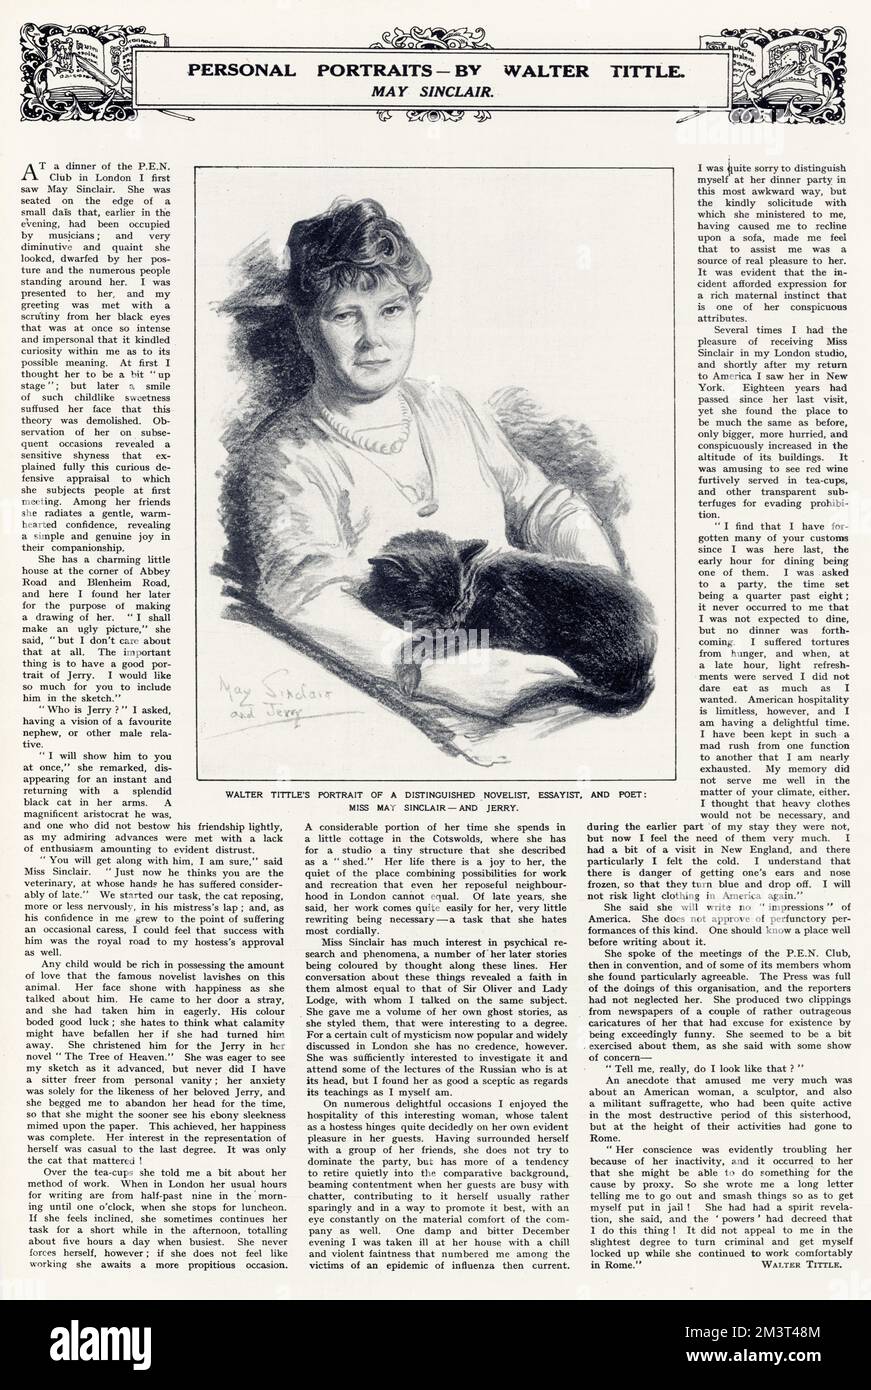 May Sinclair, geboren in Mary Amelia St. Clair (1863 - 1946), Schriftsteller, Kurzgeschichtenschreiber, Dichter und Suffragist. Abgebildet in den illustrierten London News mit ihrer Katze Jerry in einem Porträt mit begleitendem Artikel von Walter Tittle. Stockfoto